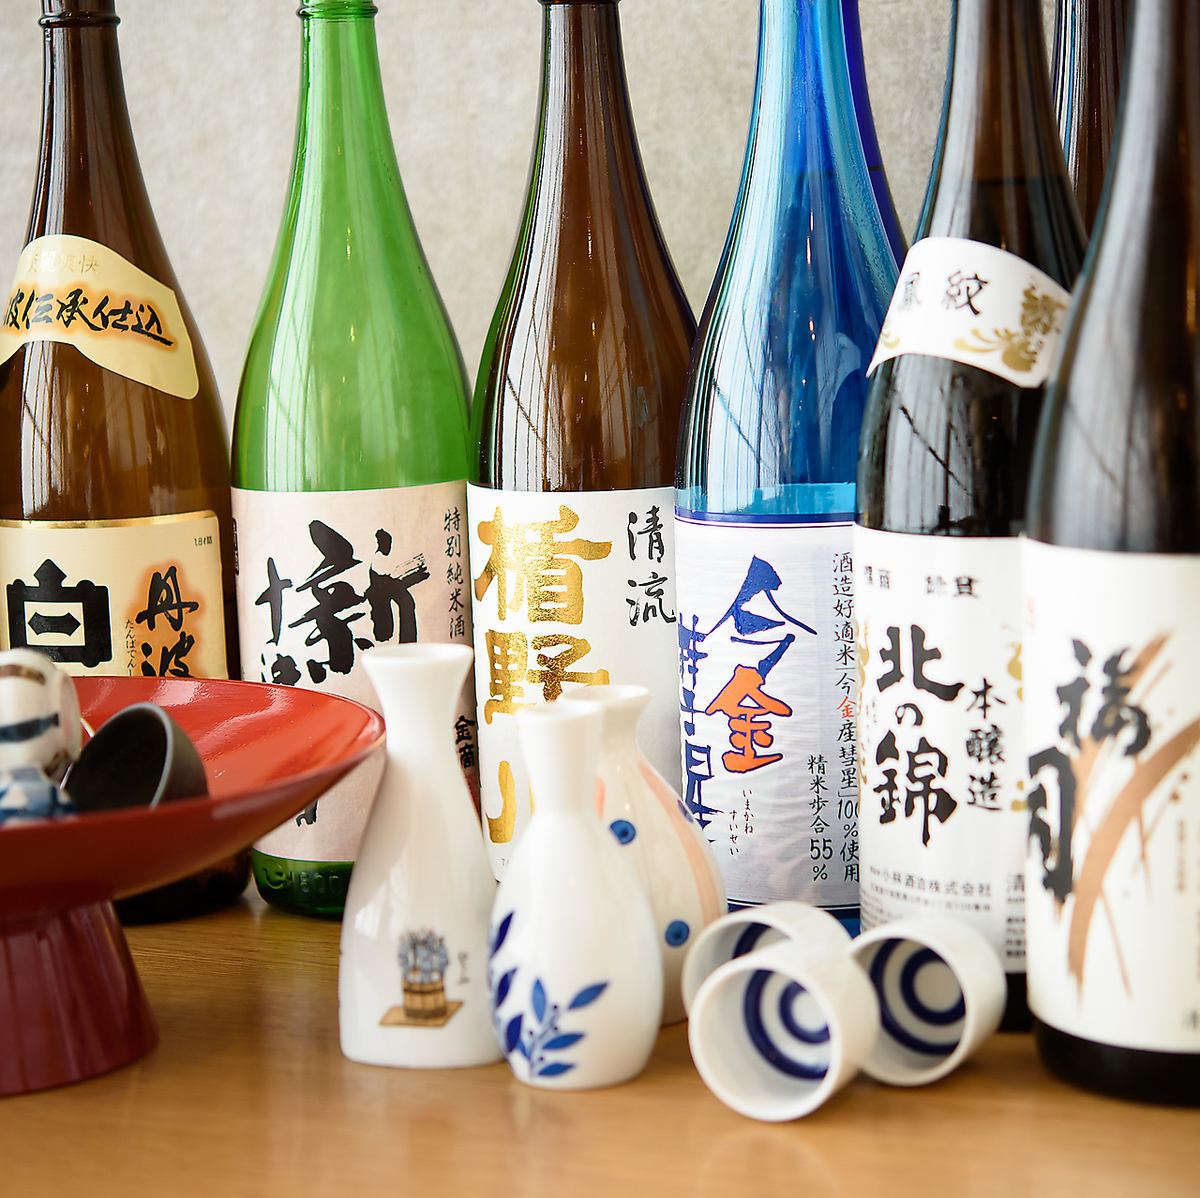 日本酒利き酒師が厳選した日本酒を多数ご用意しております。